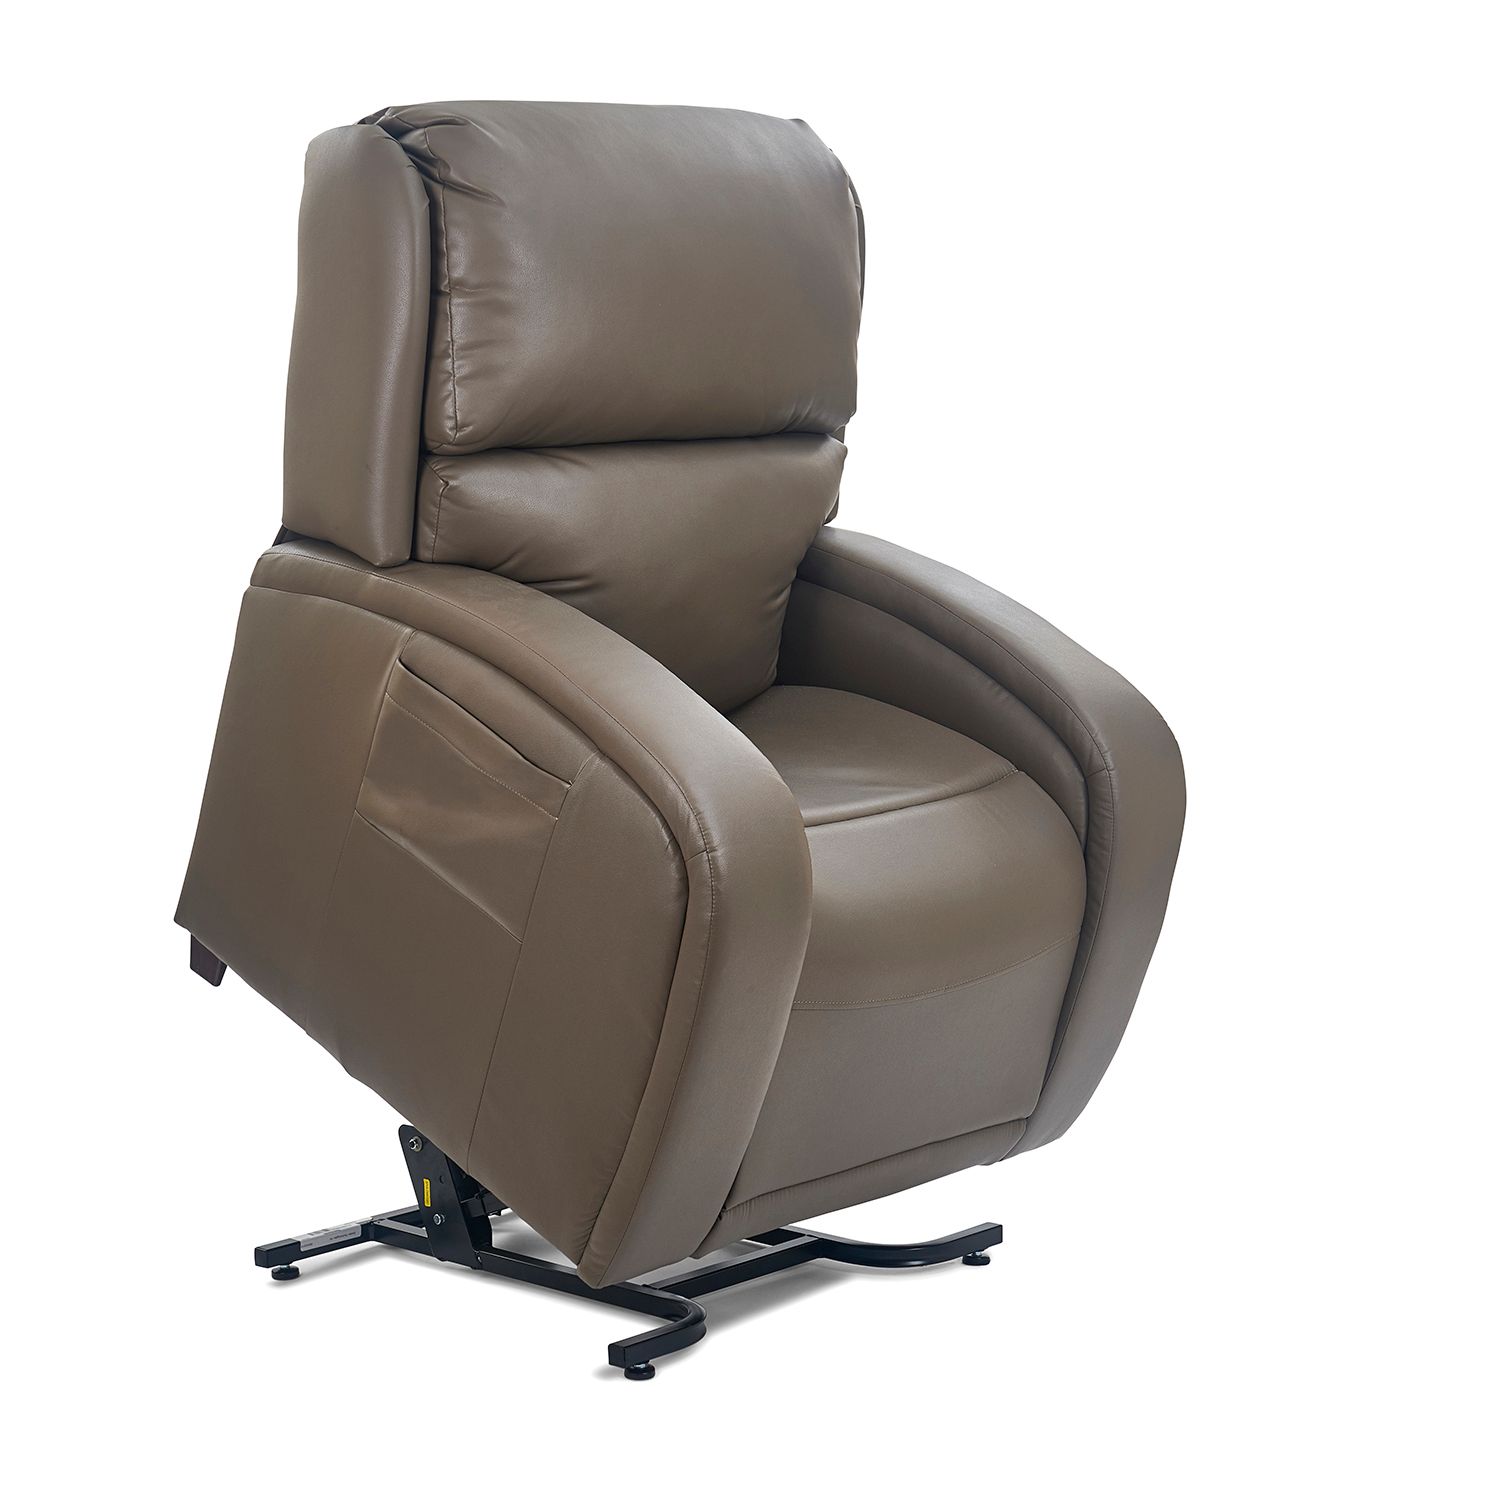 Chula Vista Golden Tech lift chair recliner twilight ezsleeper cloud viva relaxer maxi-comfort